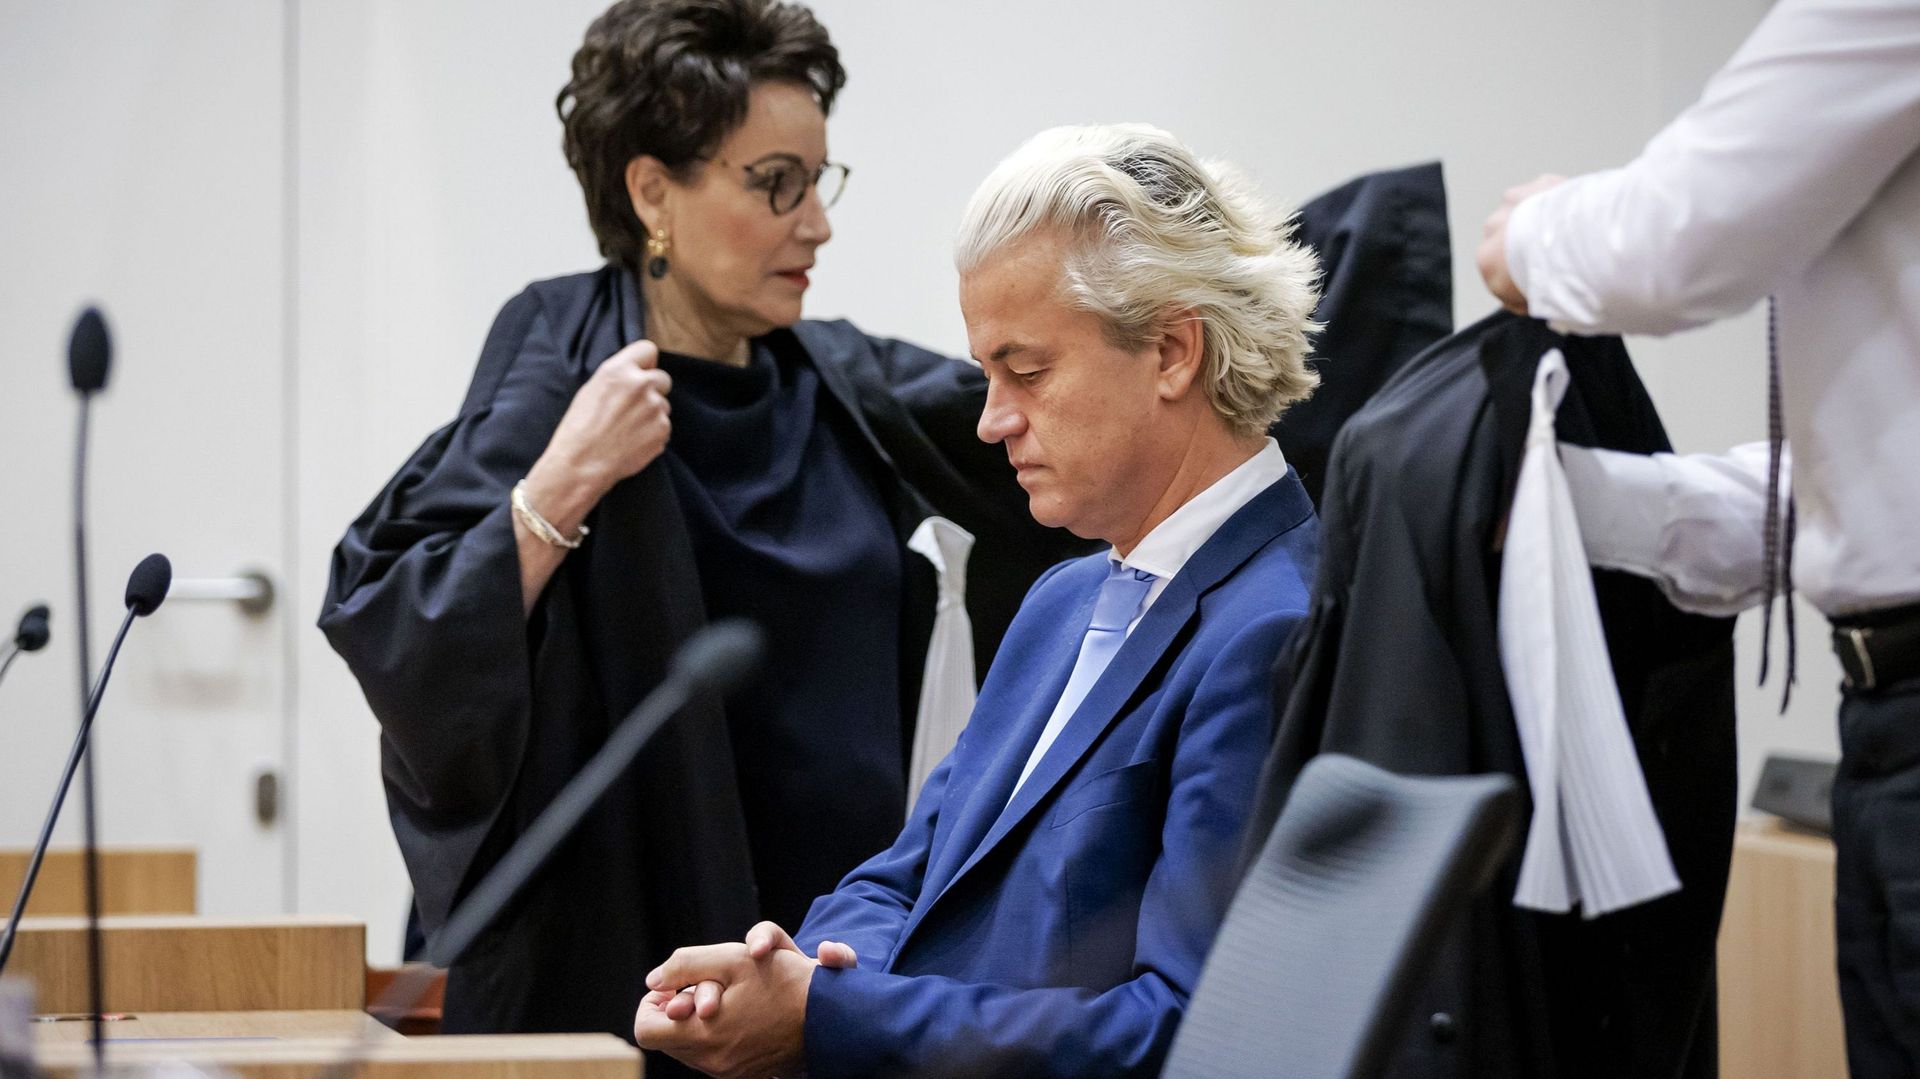 Pays-Bas : le leader d'extrême droite Wilders condamné en appel pour "insulte collective" contre les Marocains